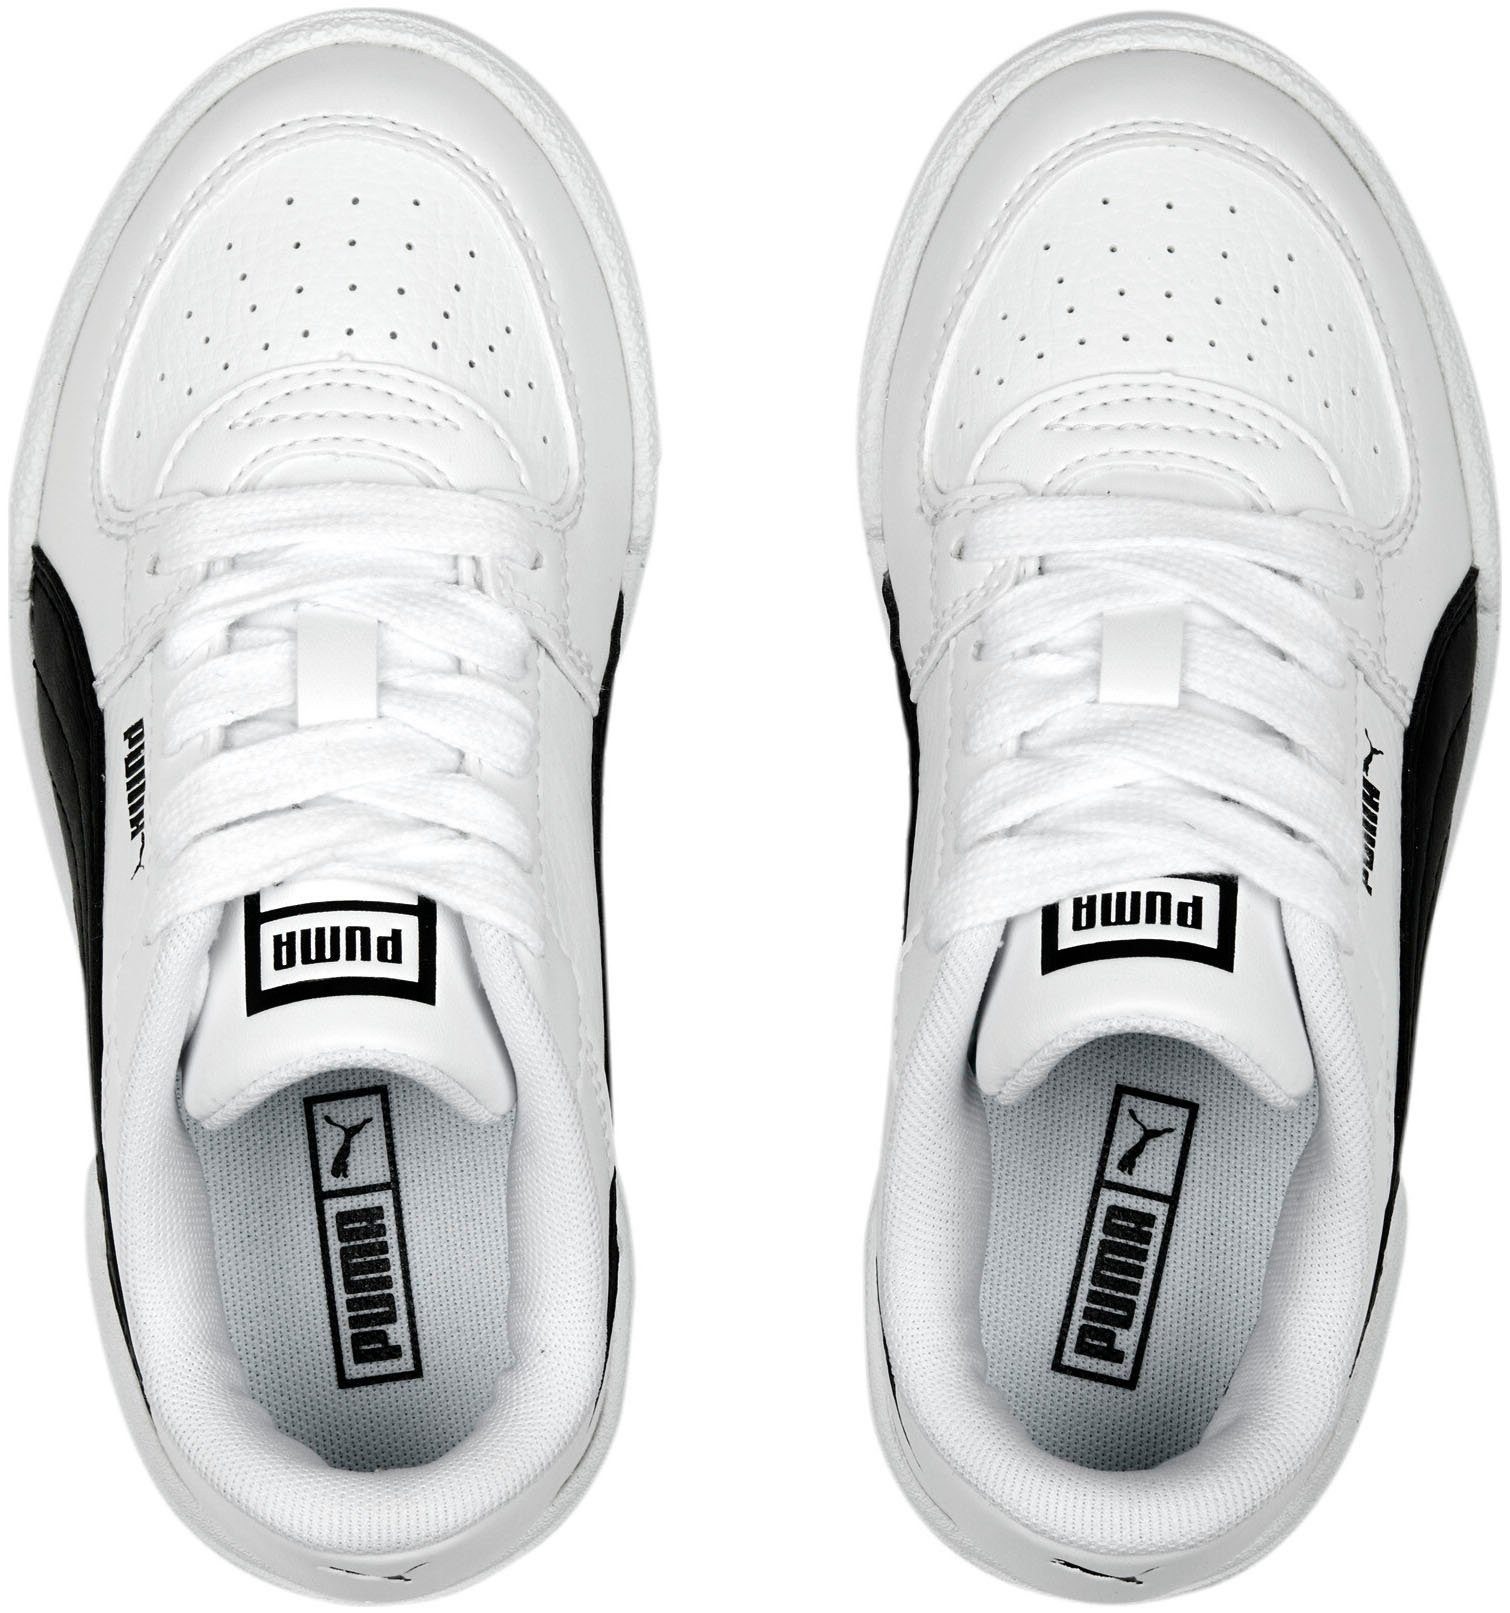 CA White-PUMA PRO PS Sneaker Black PUMA PUMA CLASSIC